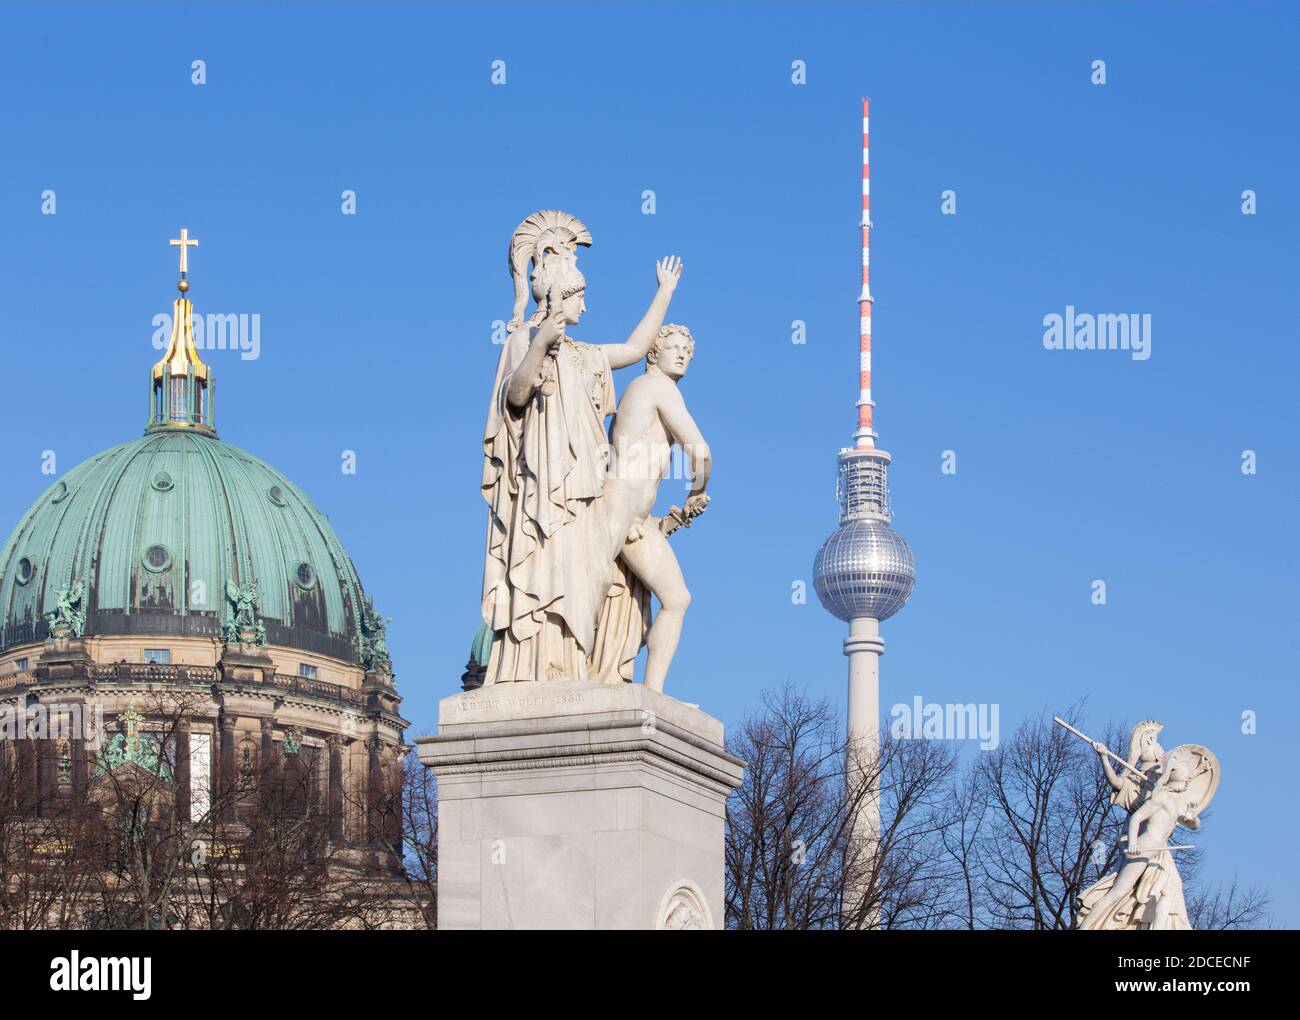 BERLIN, Deutschland, Februar - 13, 2017: Die Skulptur auf der Schlossbruecke - führt Athena den jungen Krieger in den Kampf (Pallas Athene Führt Den jun Stockfoto